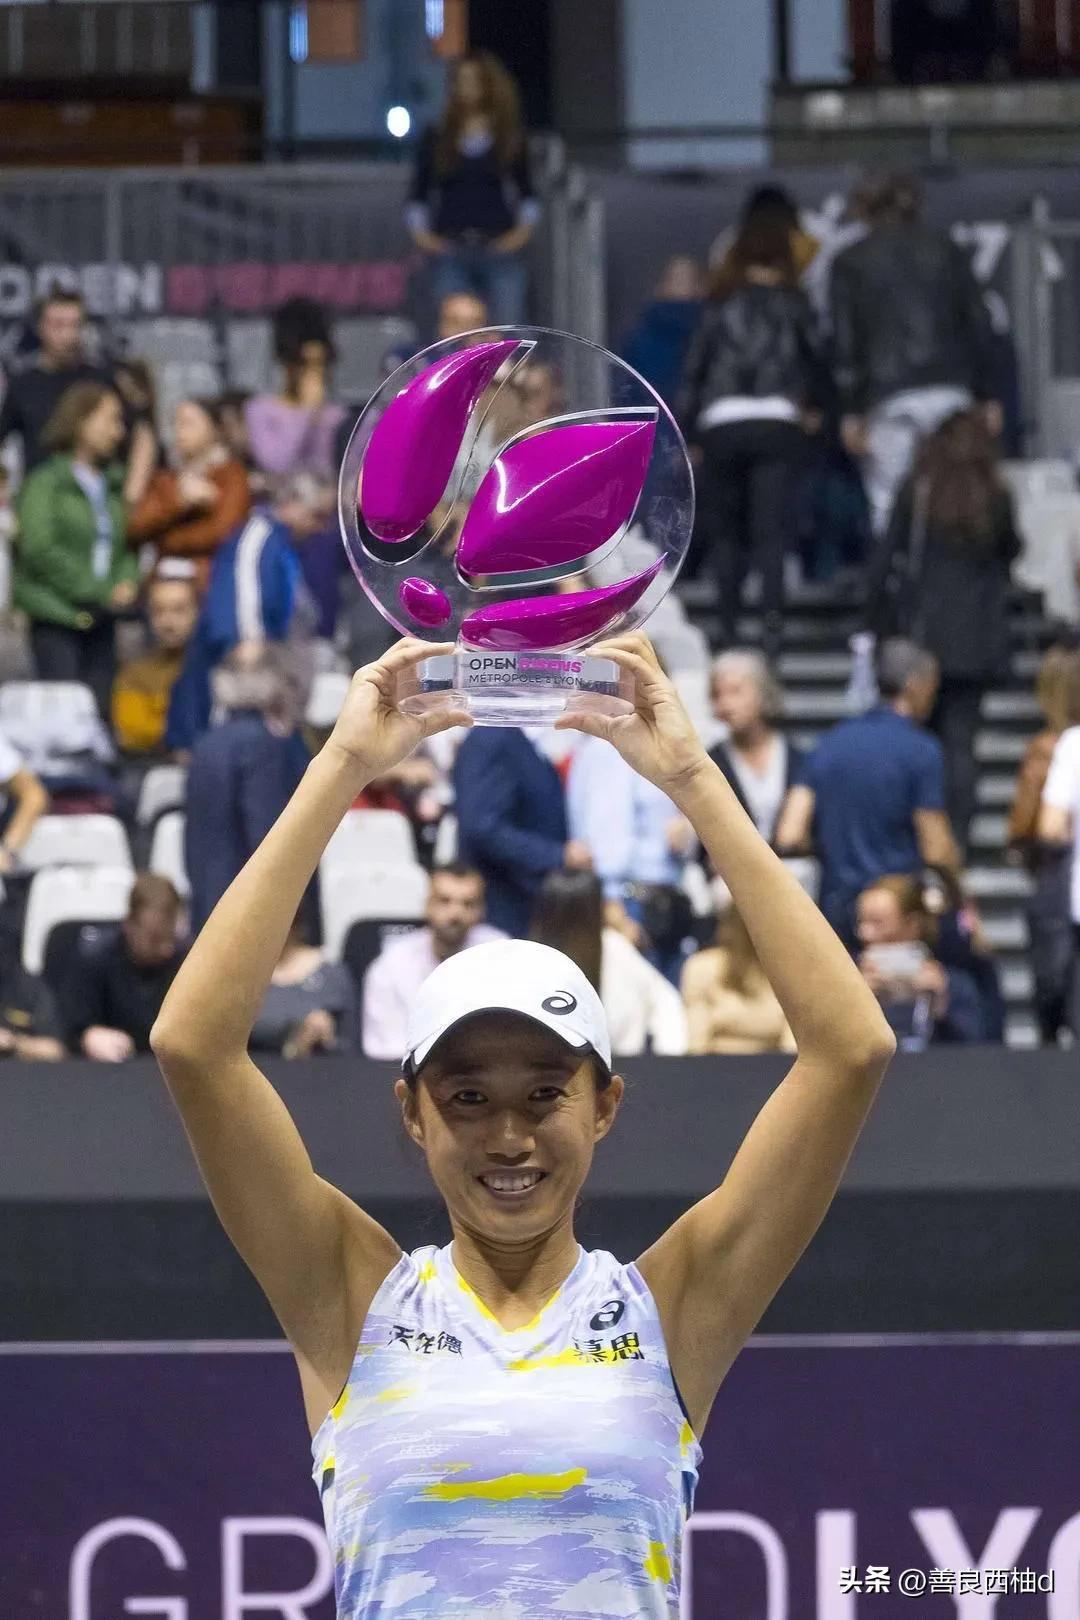 中国女子网球运动员(今年中国女子网球运动员收入榜)